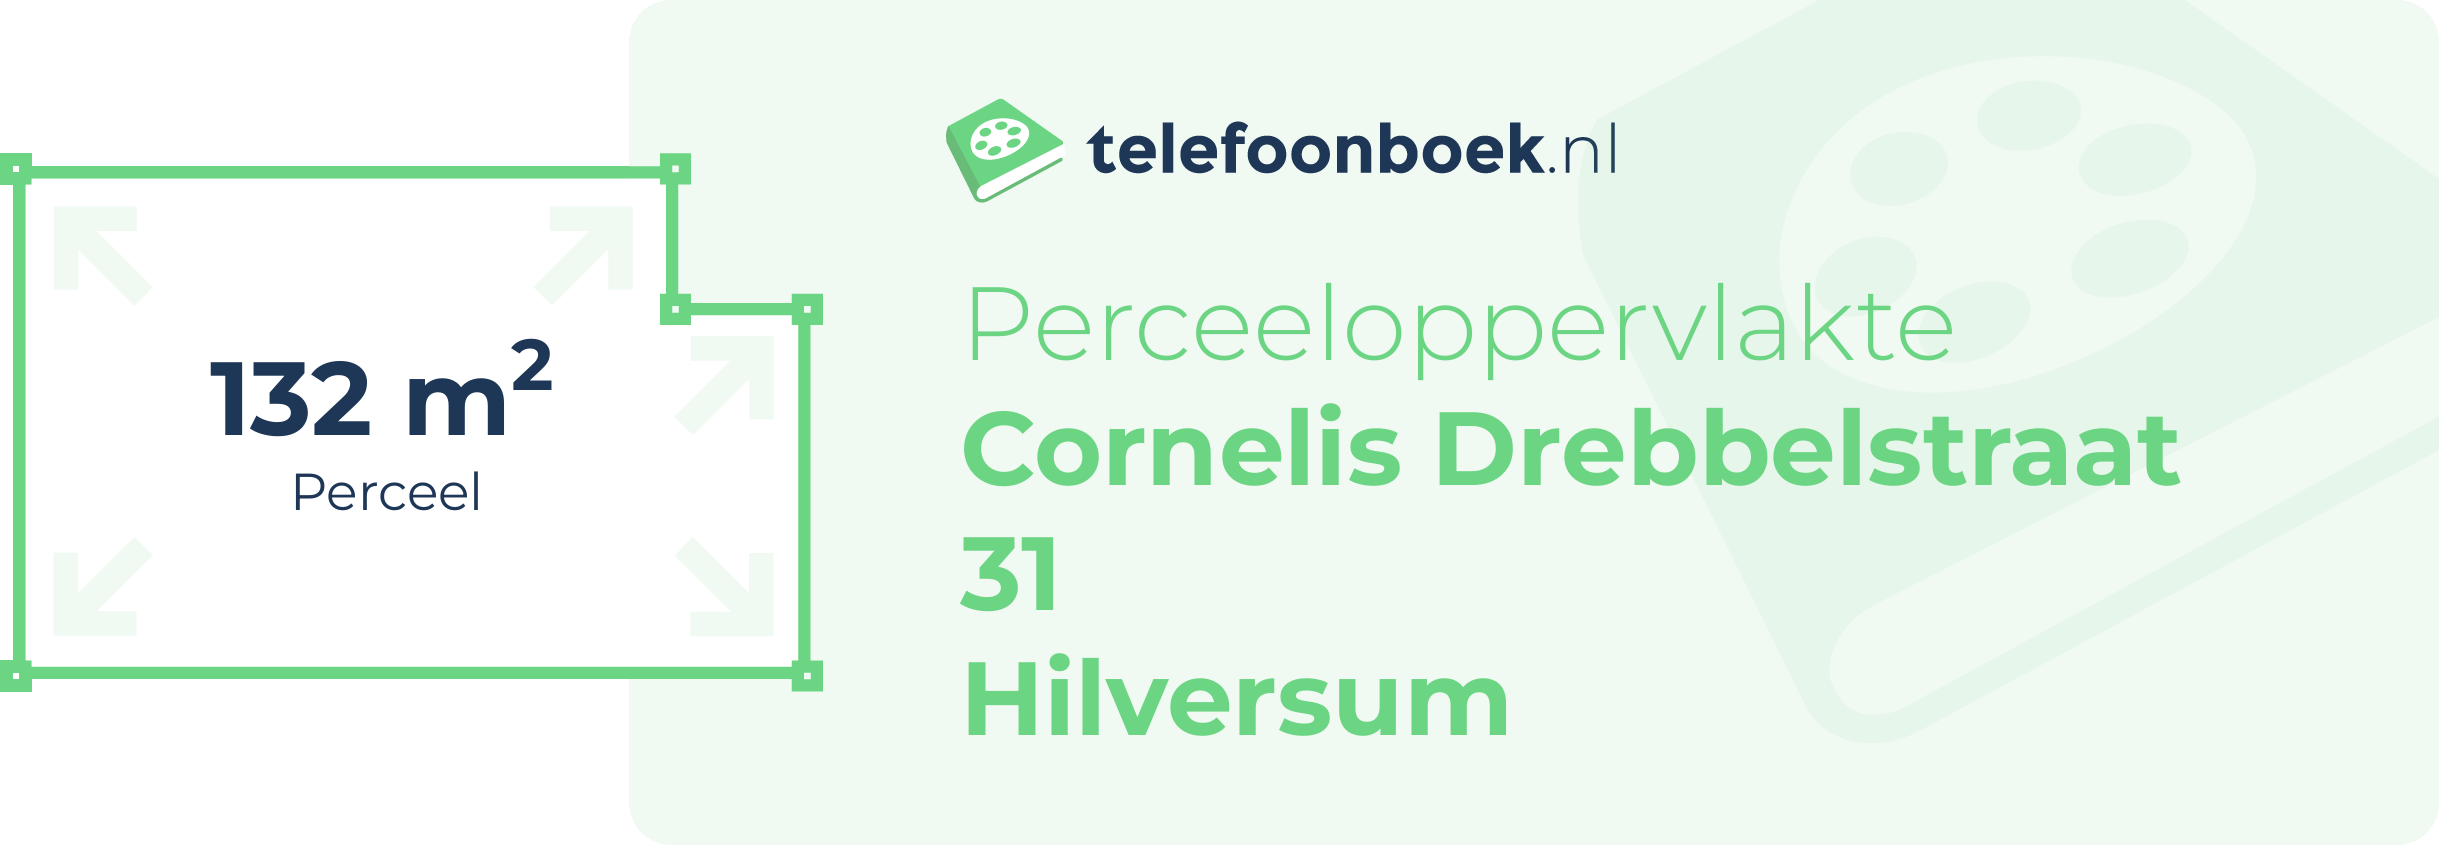 Perceeloppervlakte Cornelis Drebbelstraat 31 Hilversum